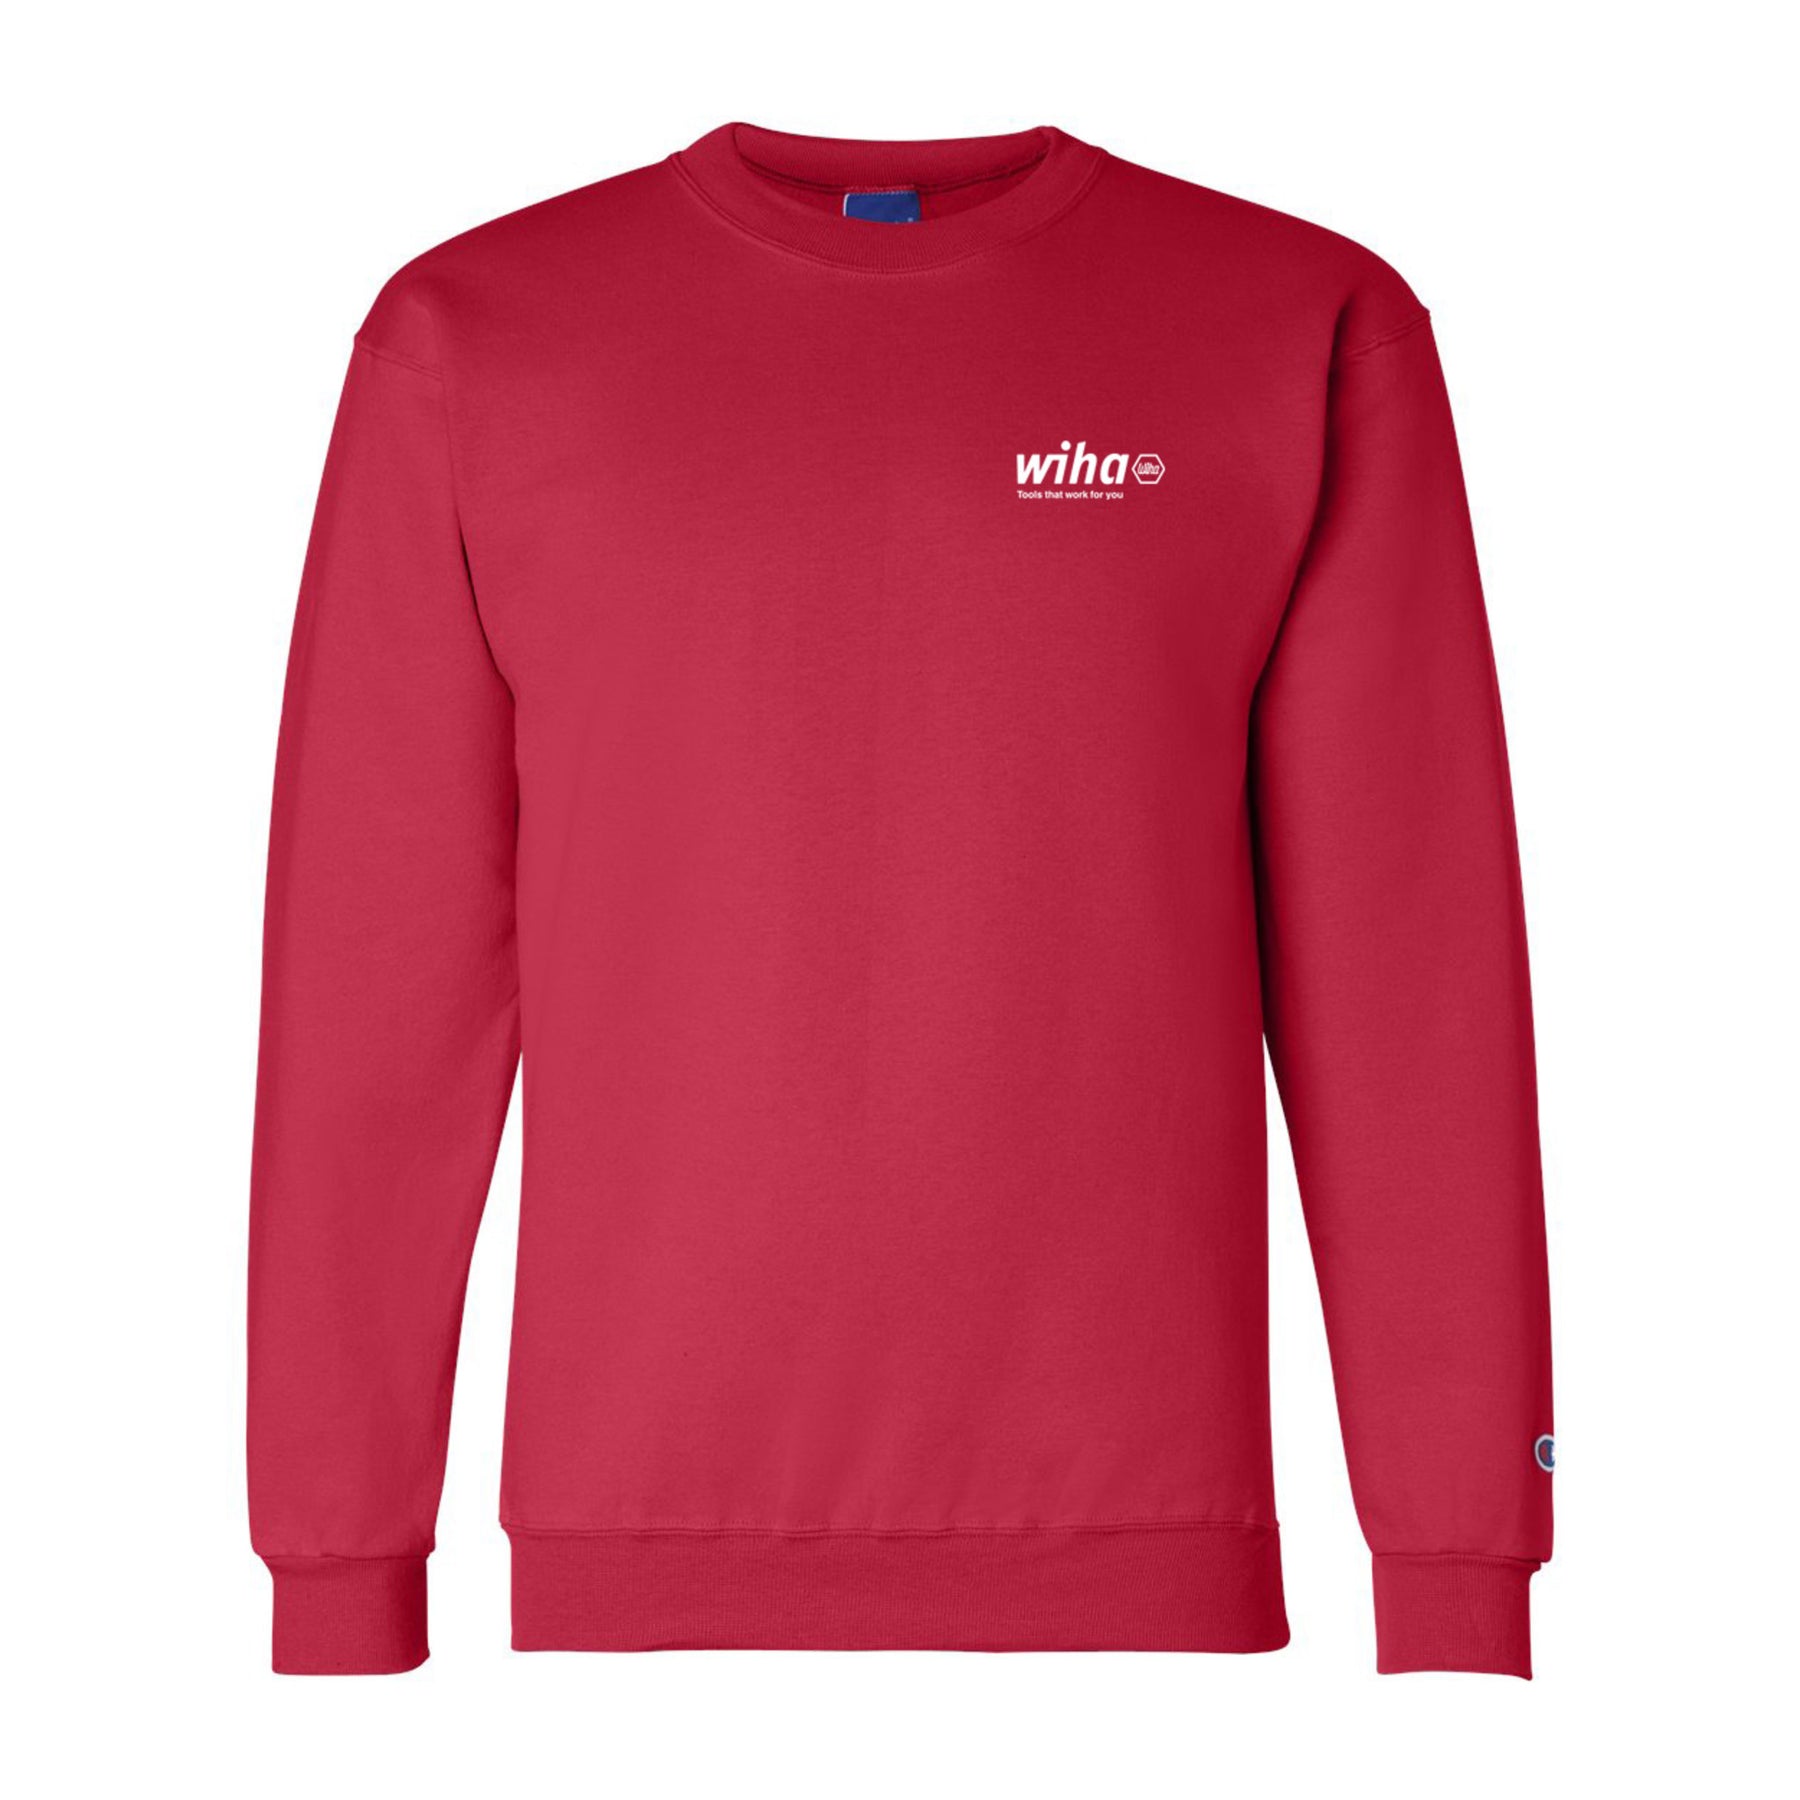 Wiha 91628 Wiha Crewneck Sweatshirt Red XL